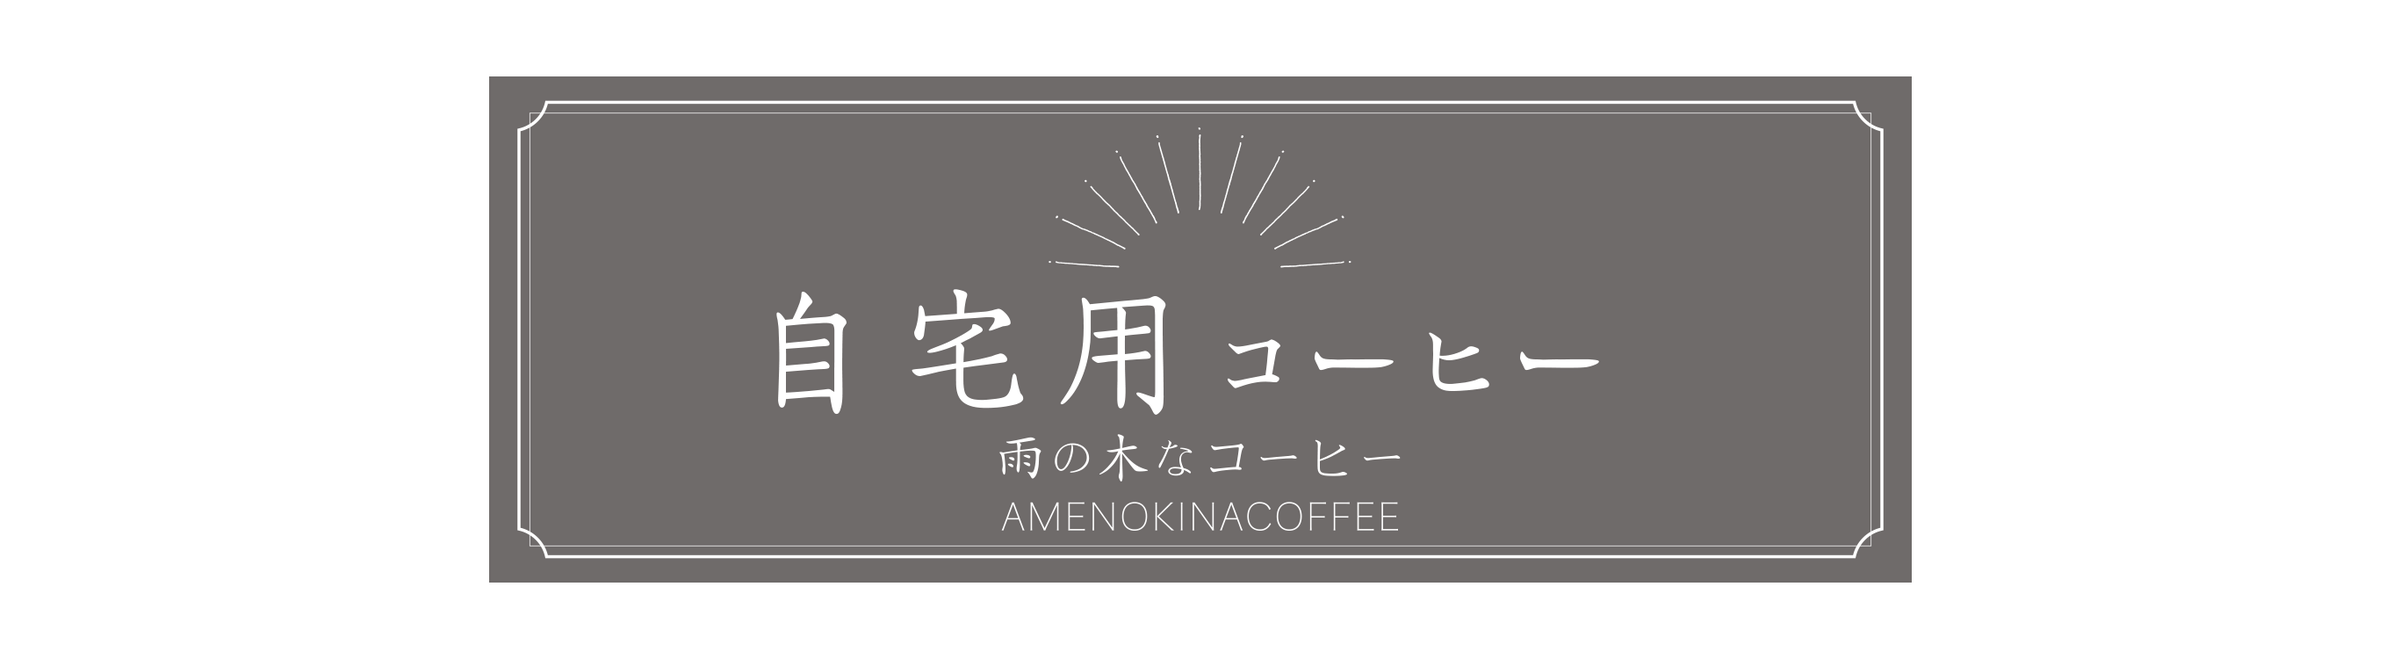 雨の木なコーヒーの自宅用コーヒー | 雨の木なコーヒー